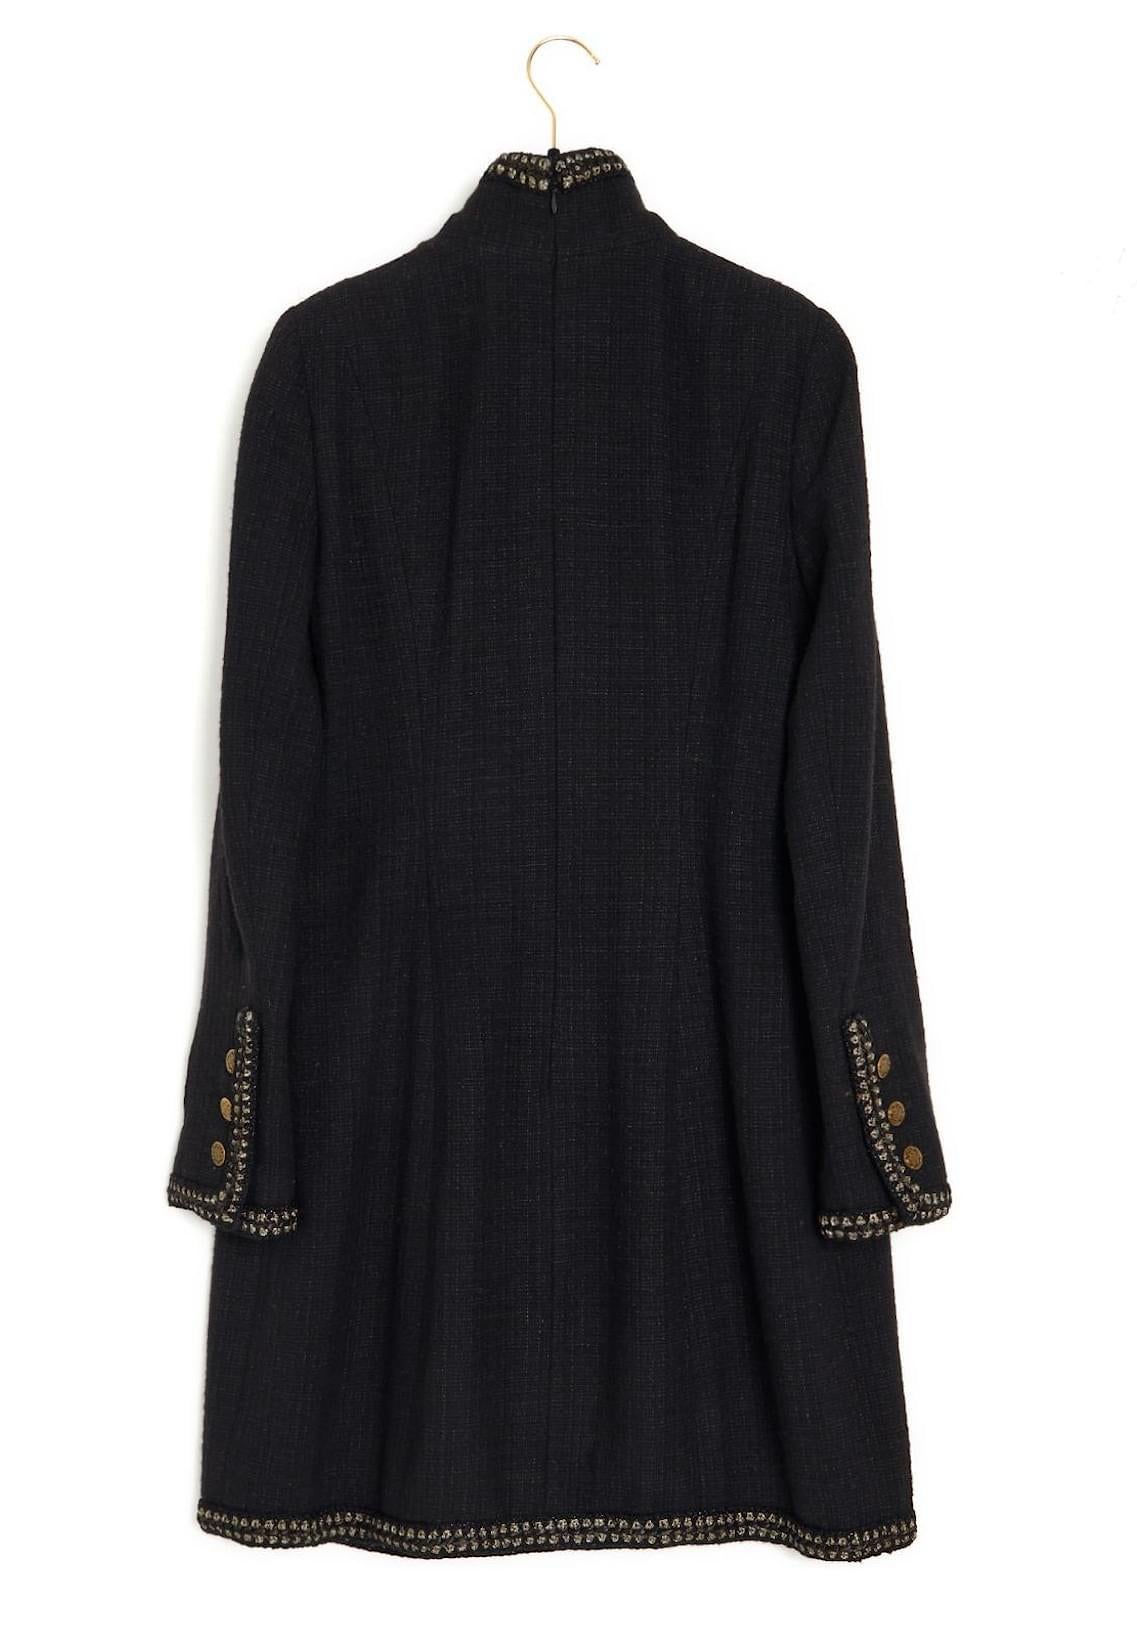 Chanel 9K$ Collectors Black Tweed Coat / Dress For Sale 2